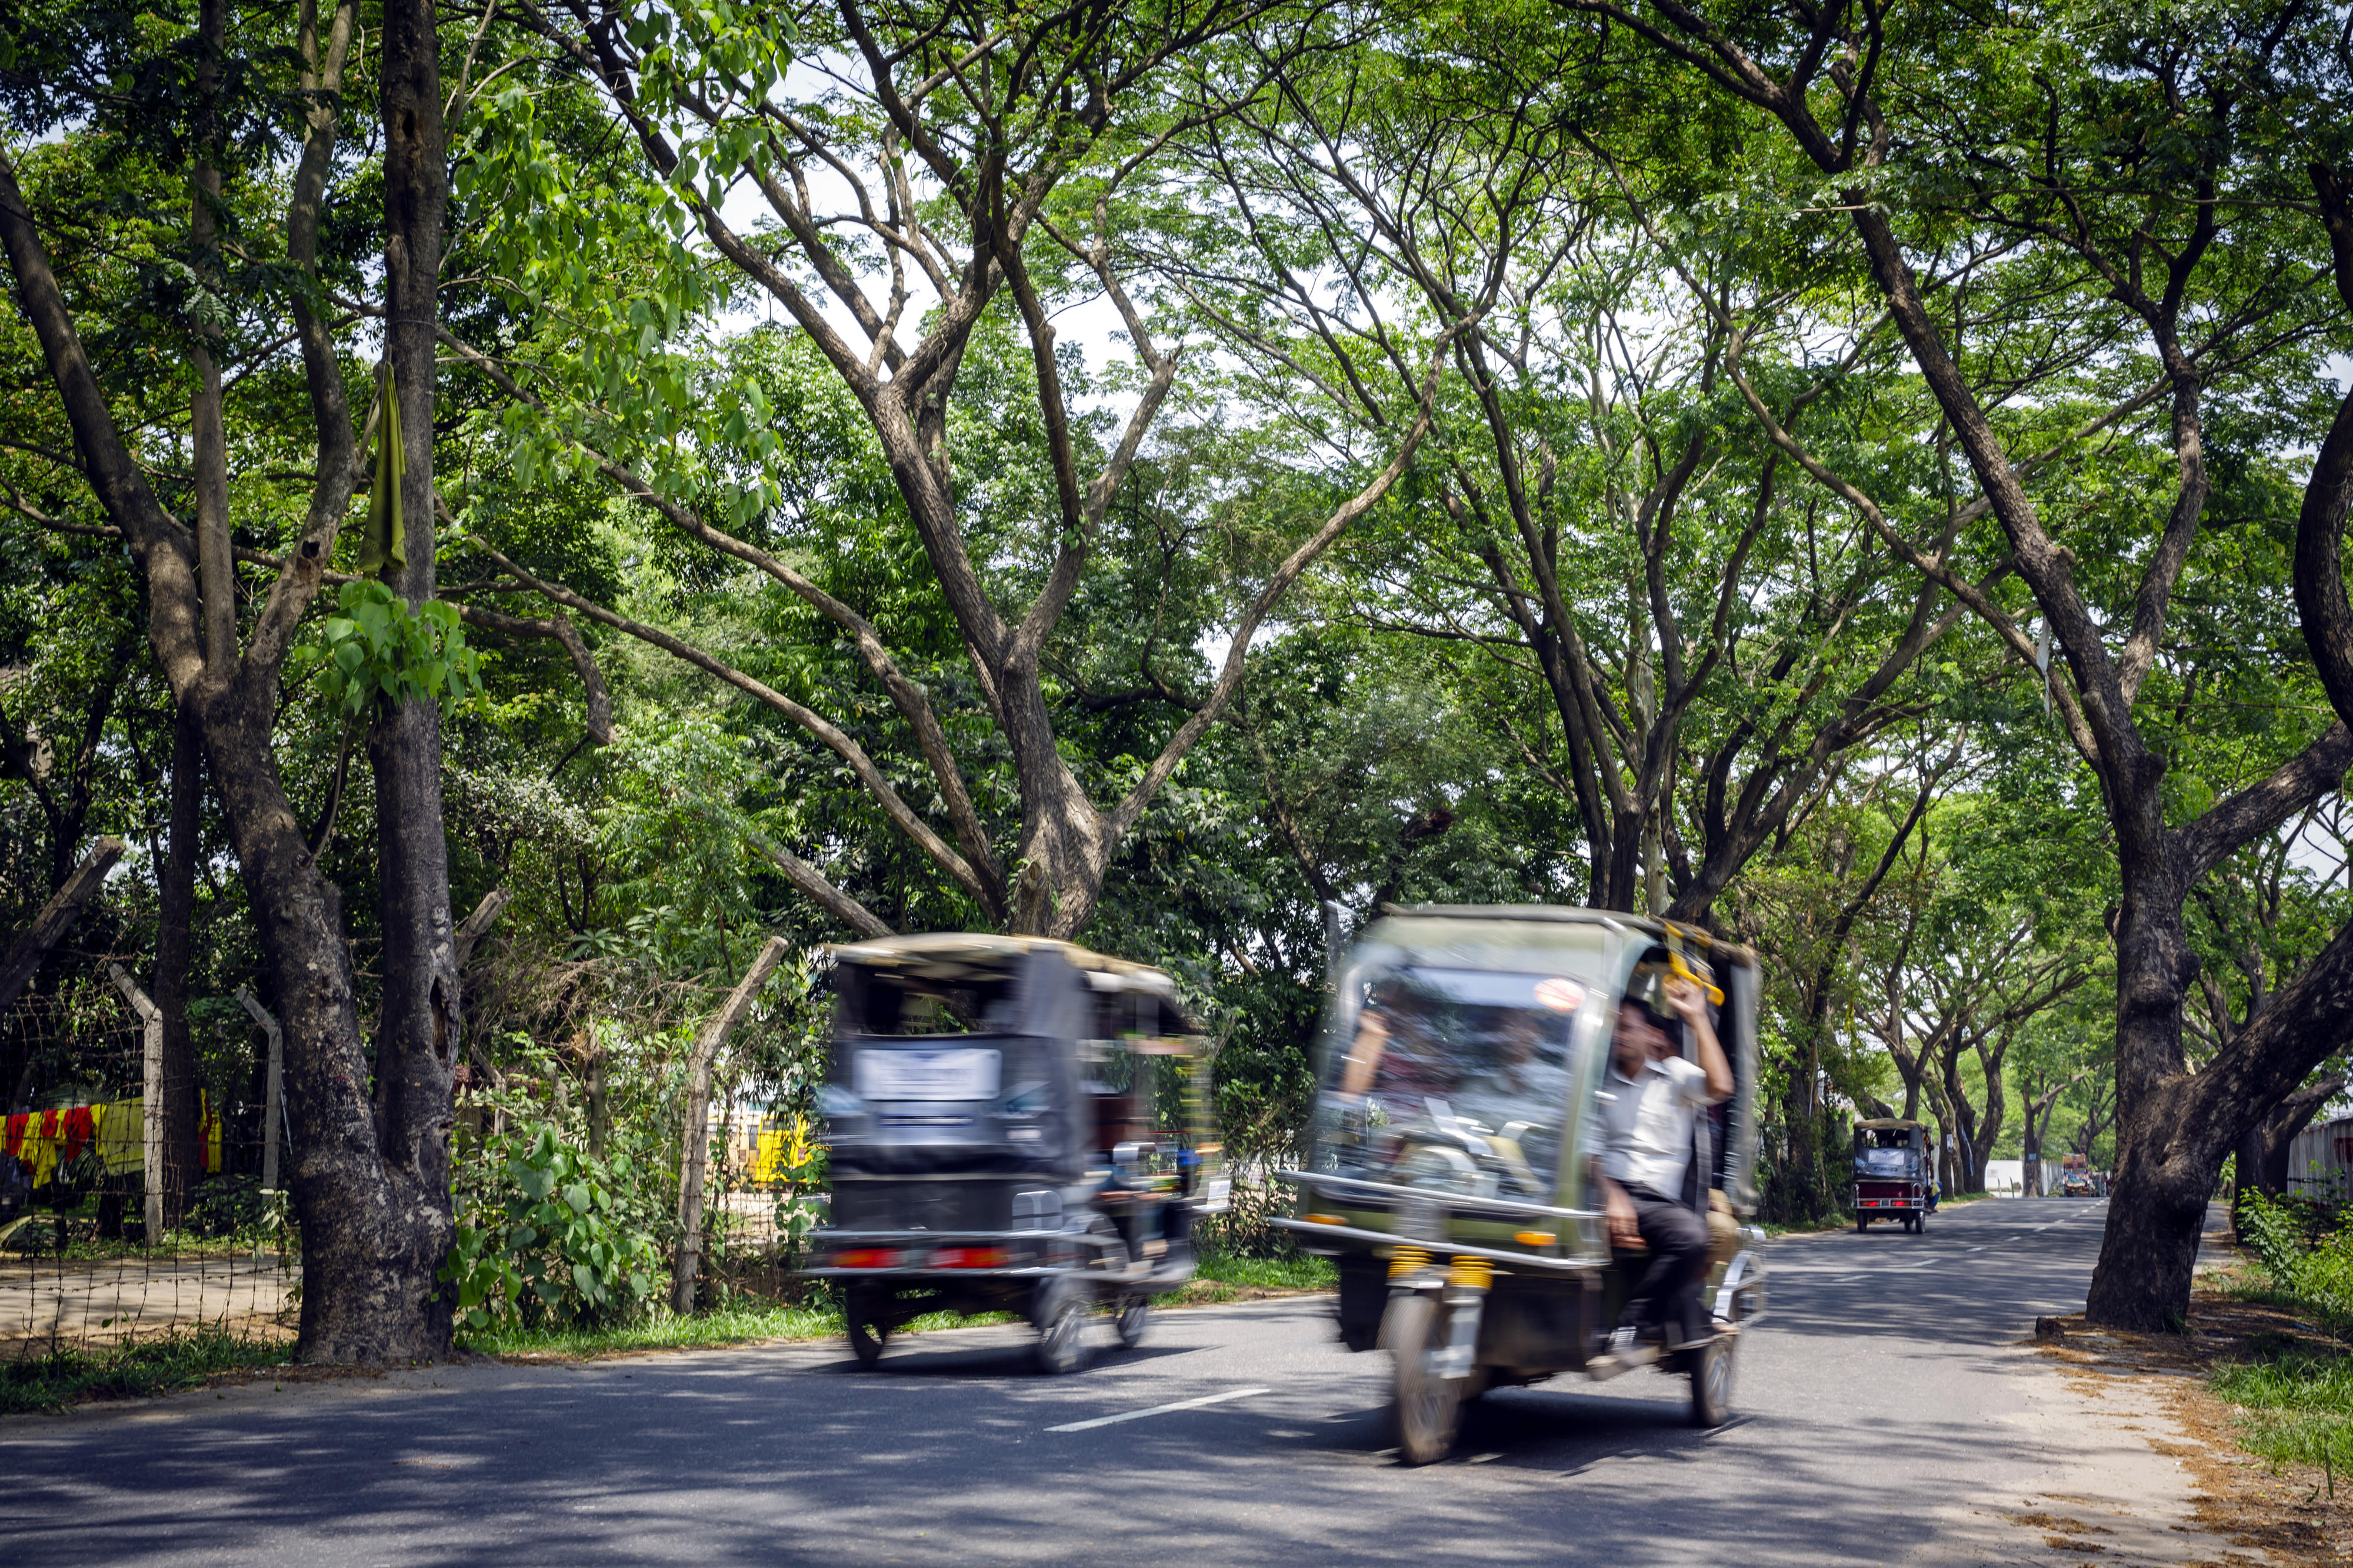 Straßenszene in Bangladesch: Zwei Tuk-Tuks begegnen sich auf einer von Bäumen gesäumten Straße 